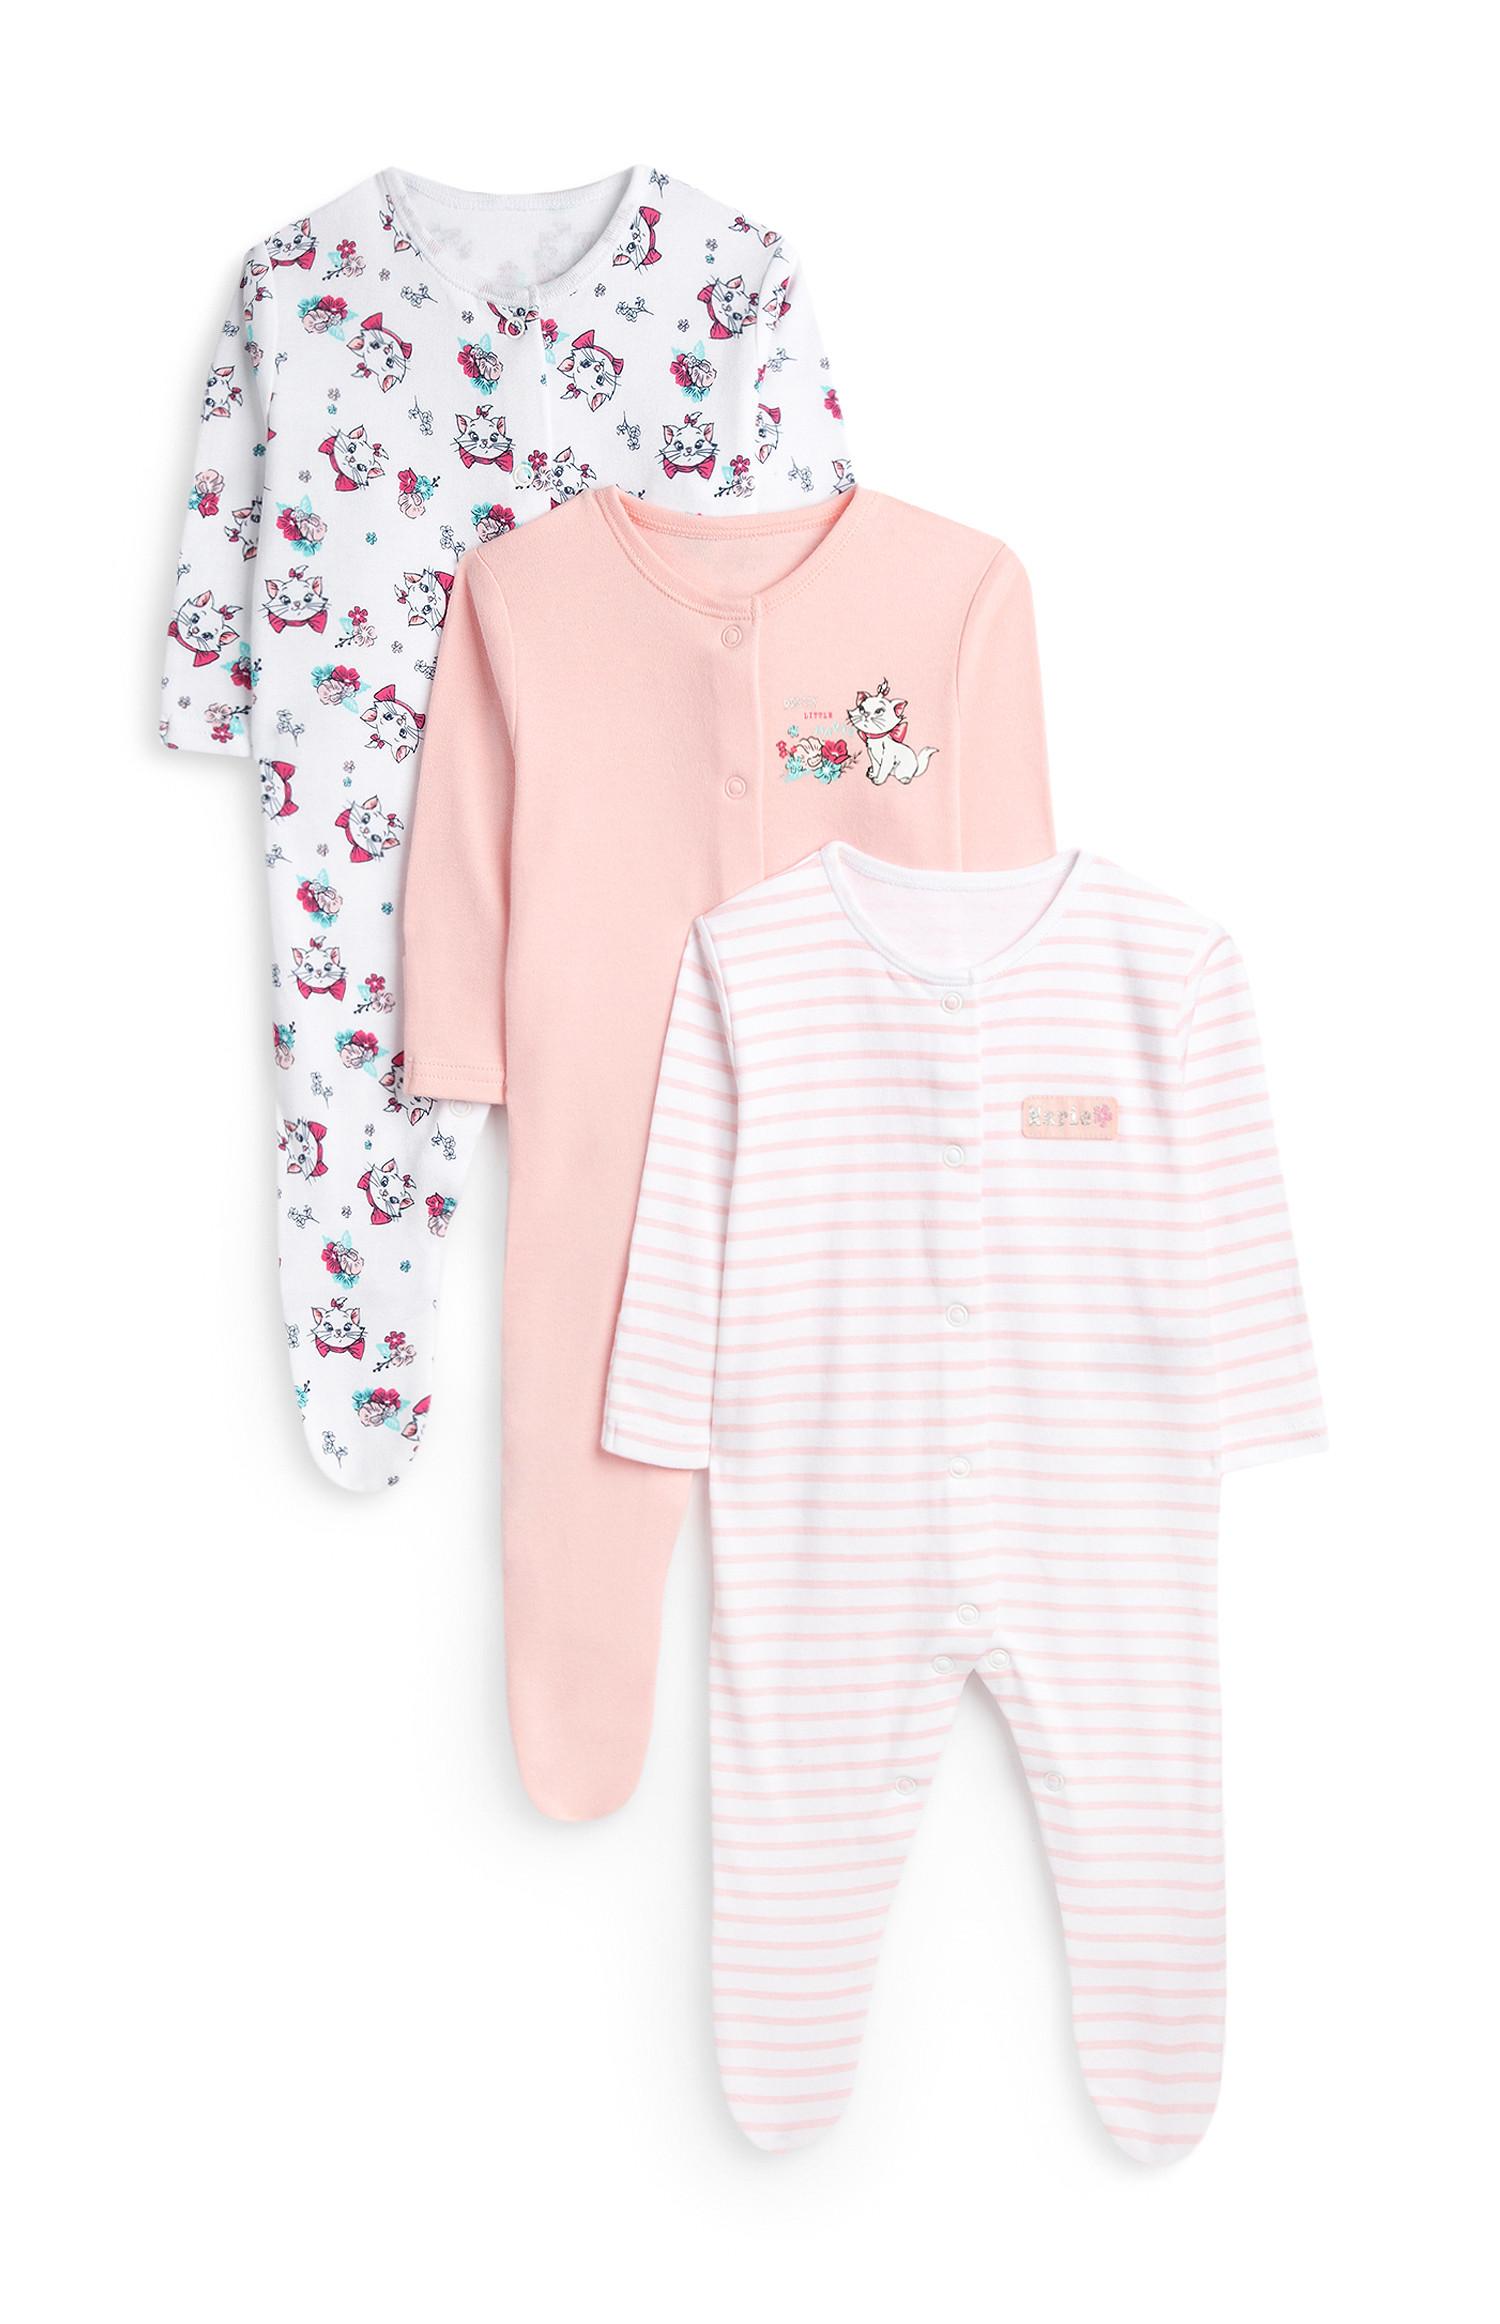 Baby Wardrobe Essentials | Primark USA